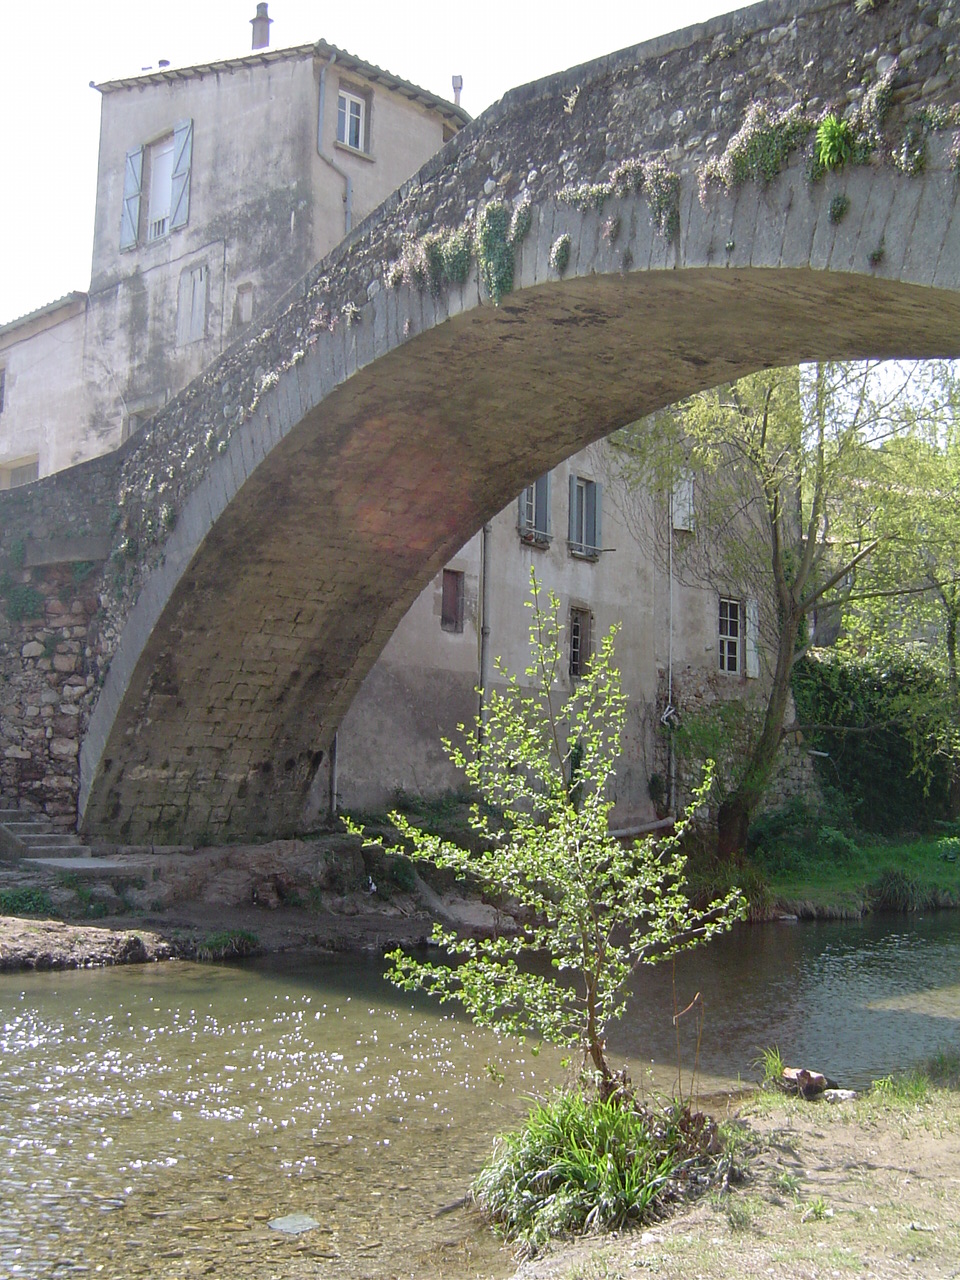 Pont de Montifort